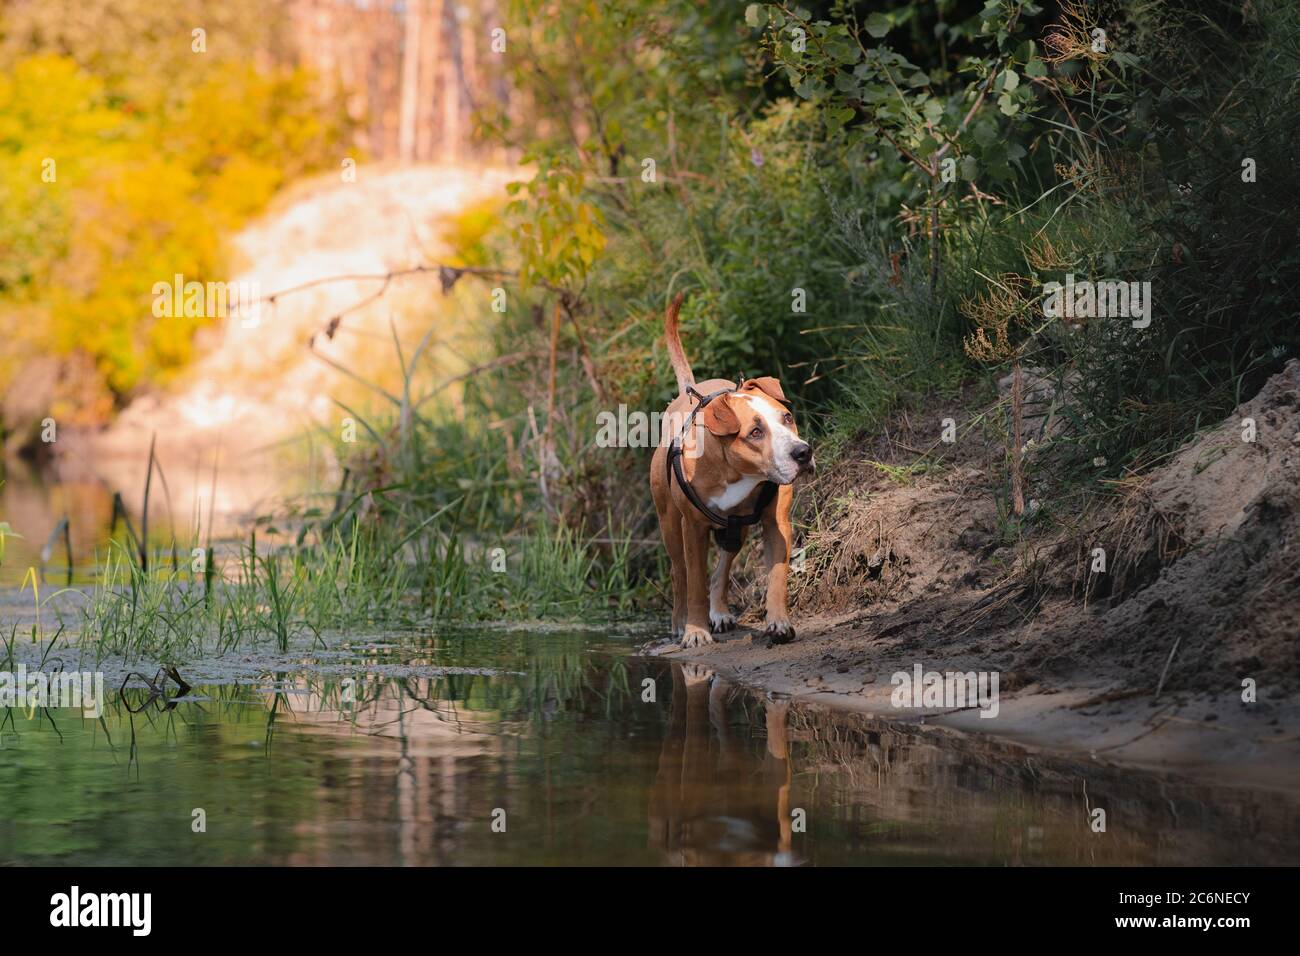 Perro en una hermosa escena natural en verano. Staffordshire terrier mut caminando por el río, tiro de teleobjetivo Foto de stock